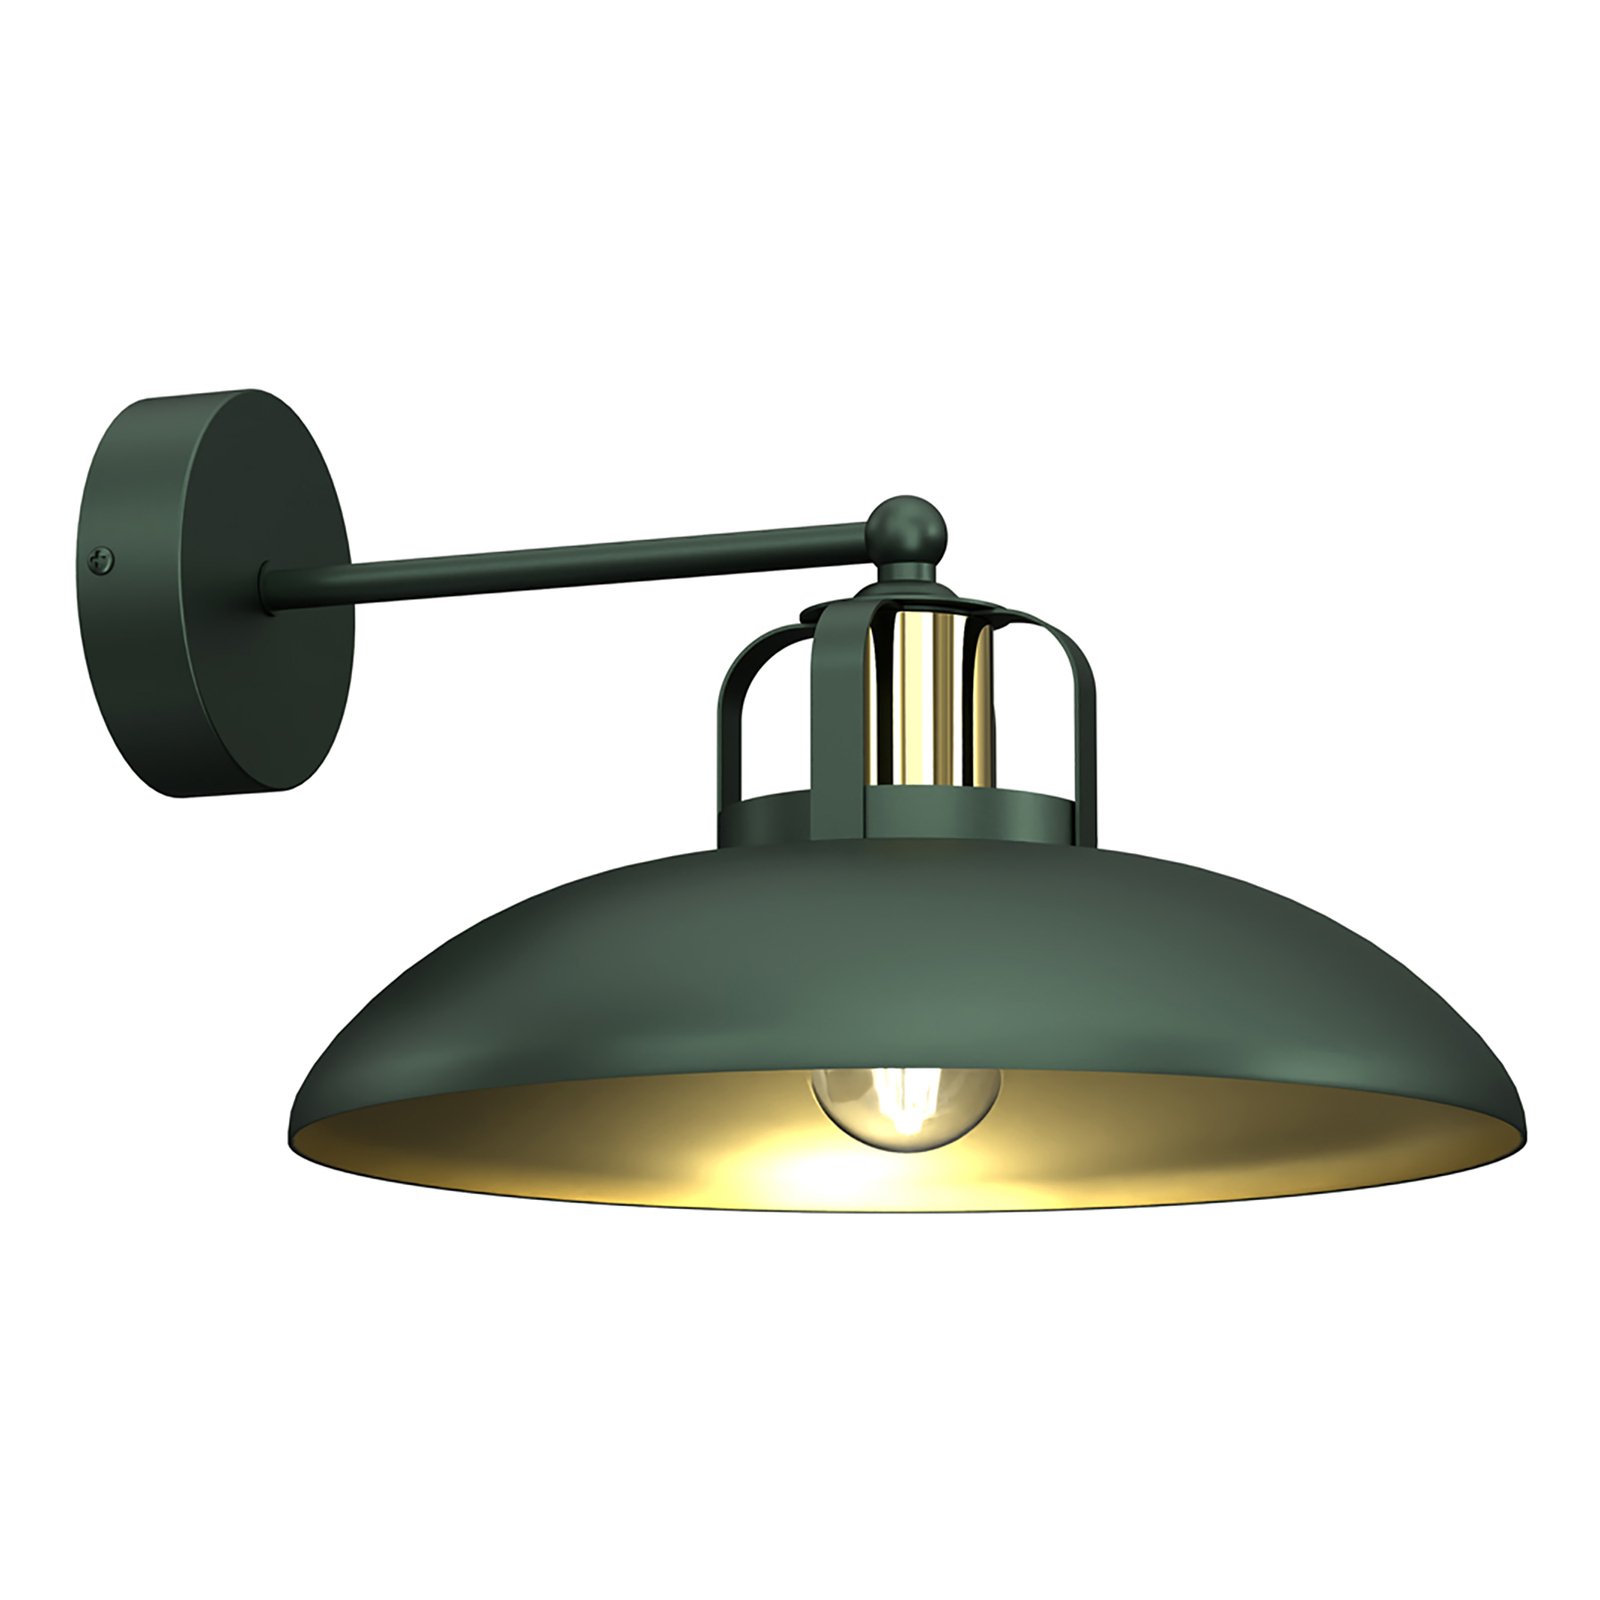 Felix wall lamp, green/gold